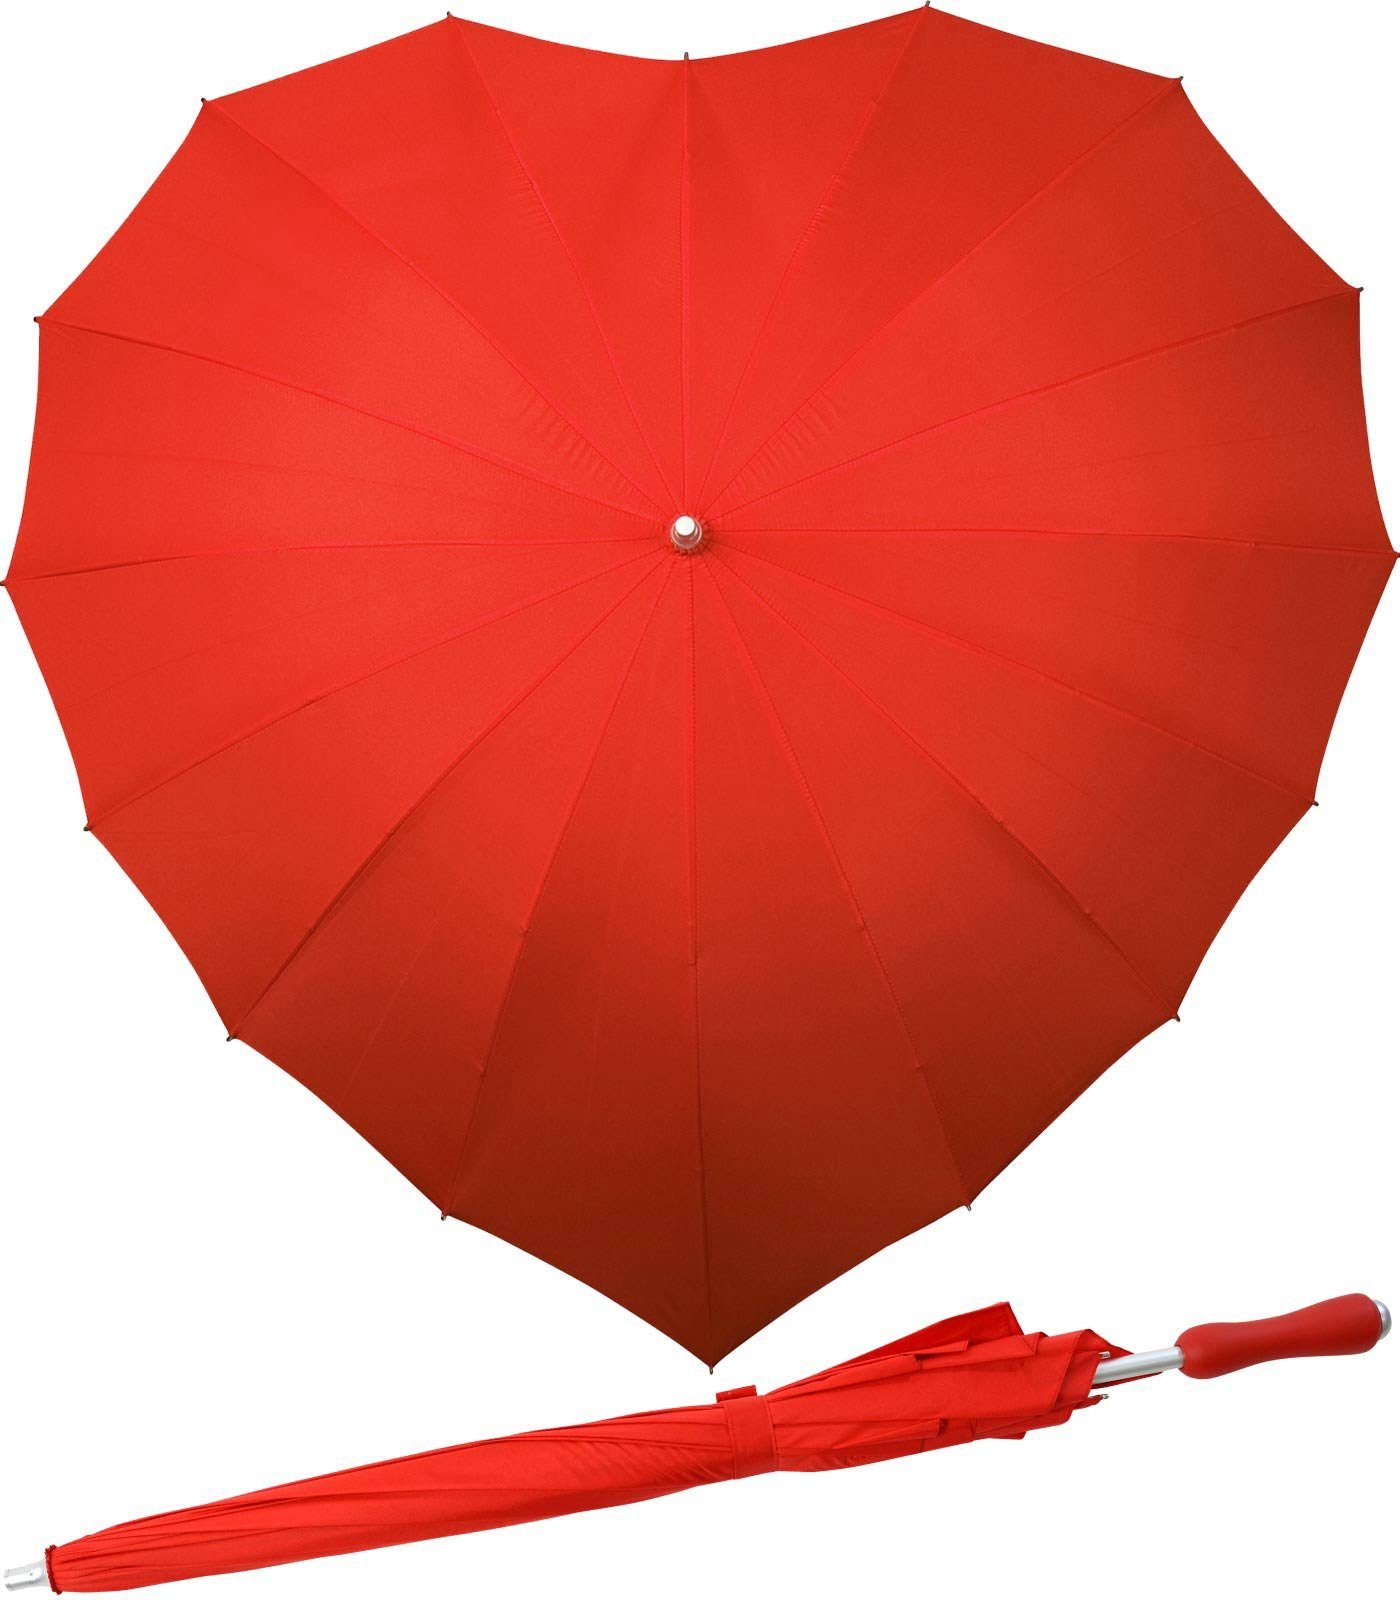 Impliva Langregenschirm Regenschirm 16-teilig in Herzform Hochzeitsschirm, herzförmiger Regenschirm rot